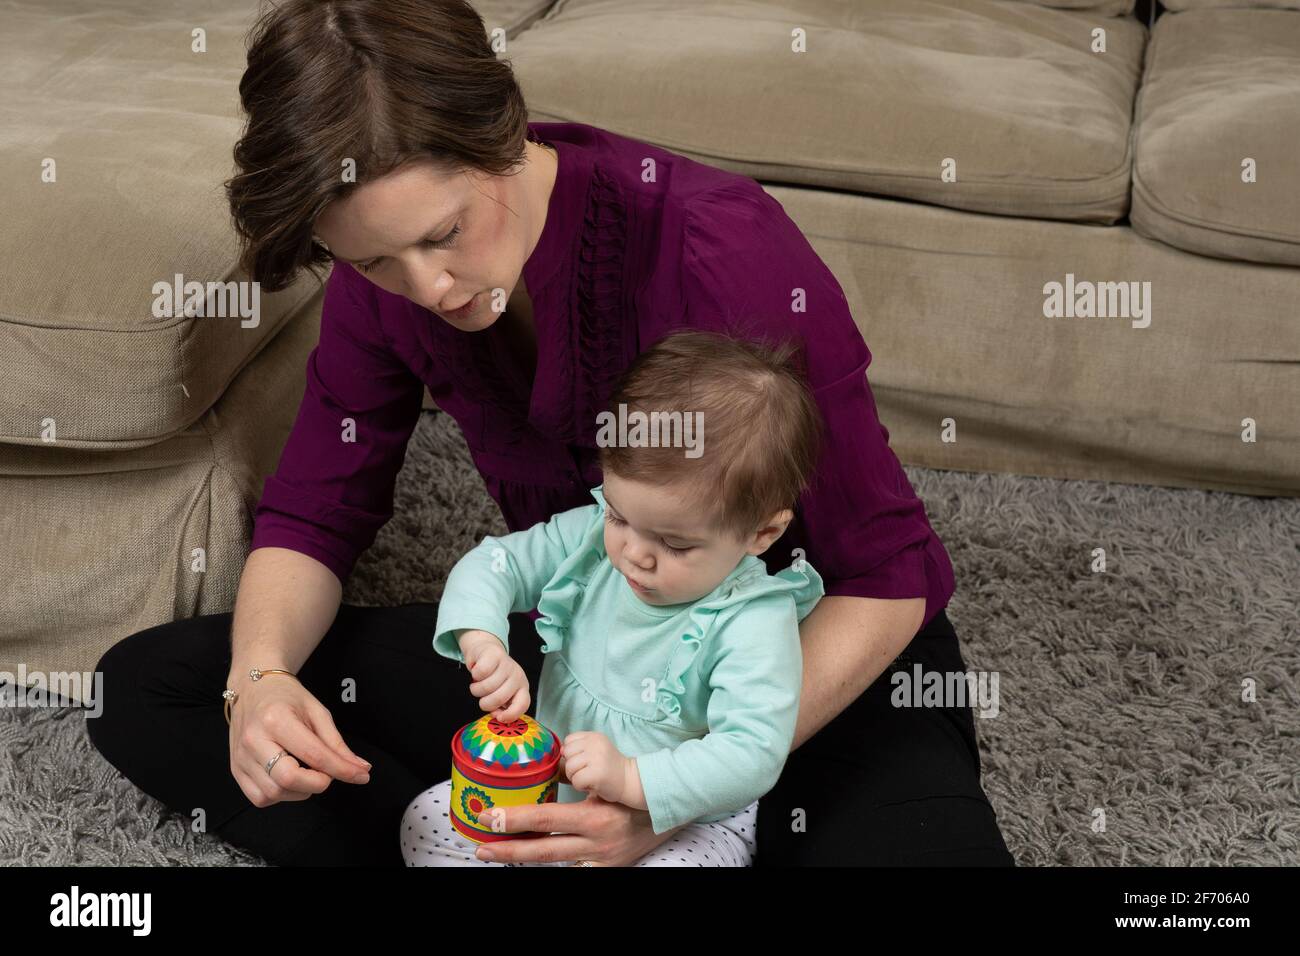 10 Monate altes Mädchen mit Mutter, das versucht, die Kurbel am Musikspielzeug zu drehen, nachdem es gezeigt wurde, wie es funktioniert Stockfoto